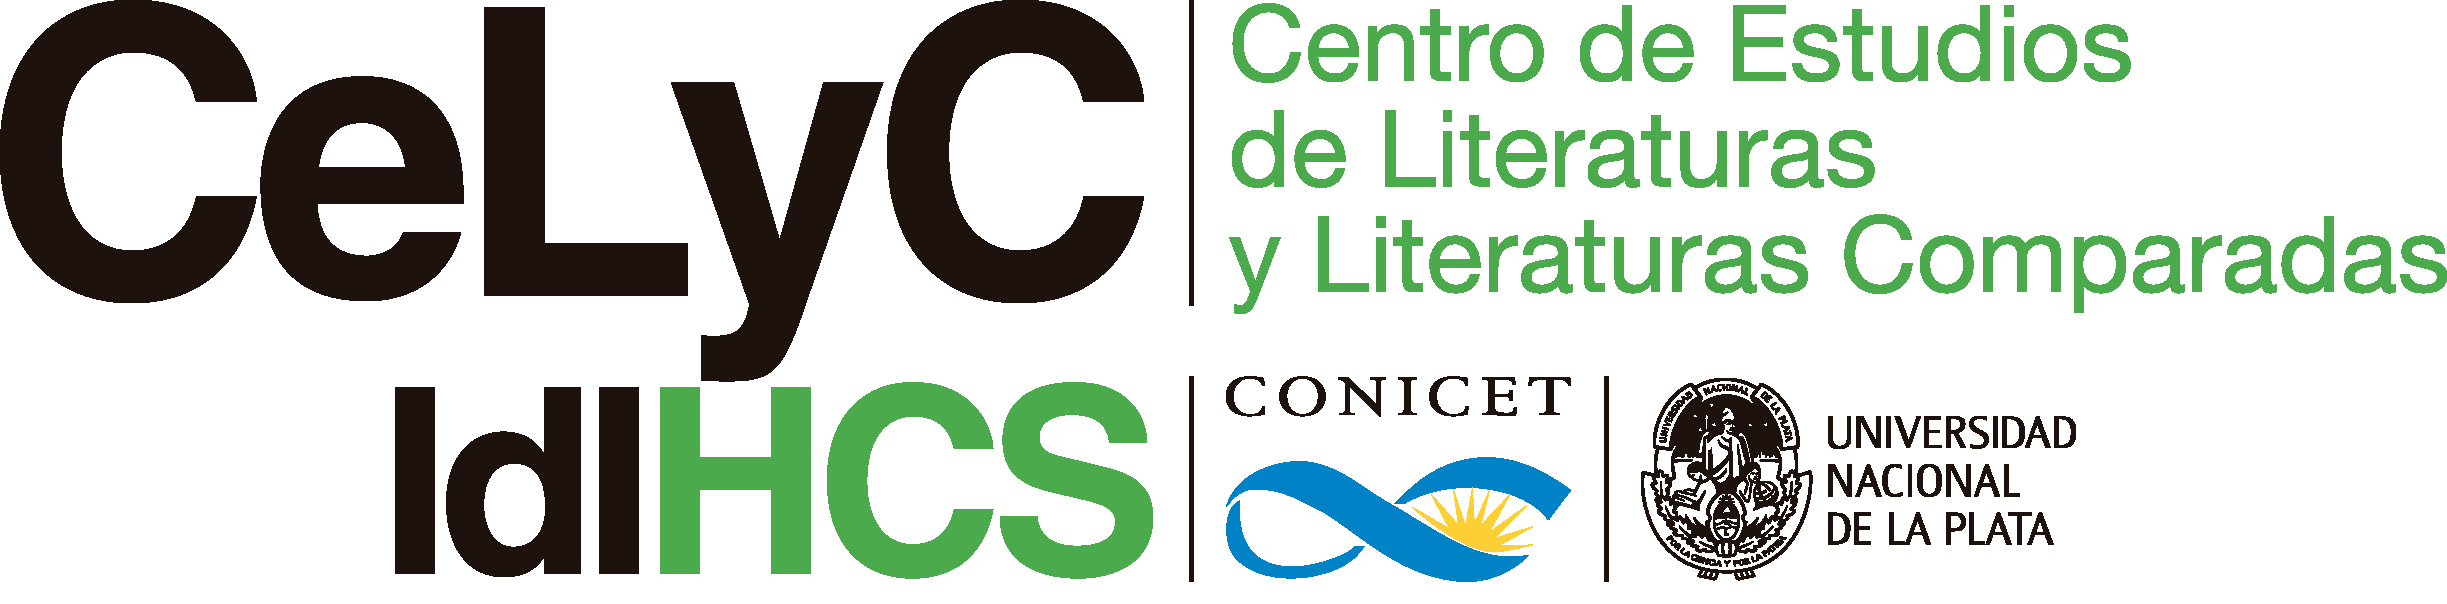 Centro de Estudios de Literaturas y Literaturas Comparadas